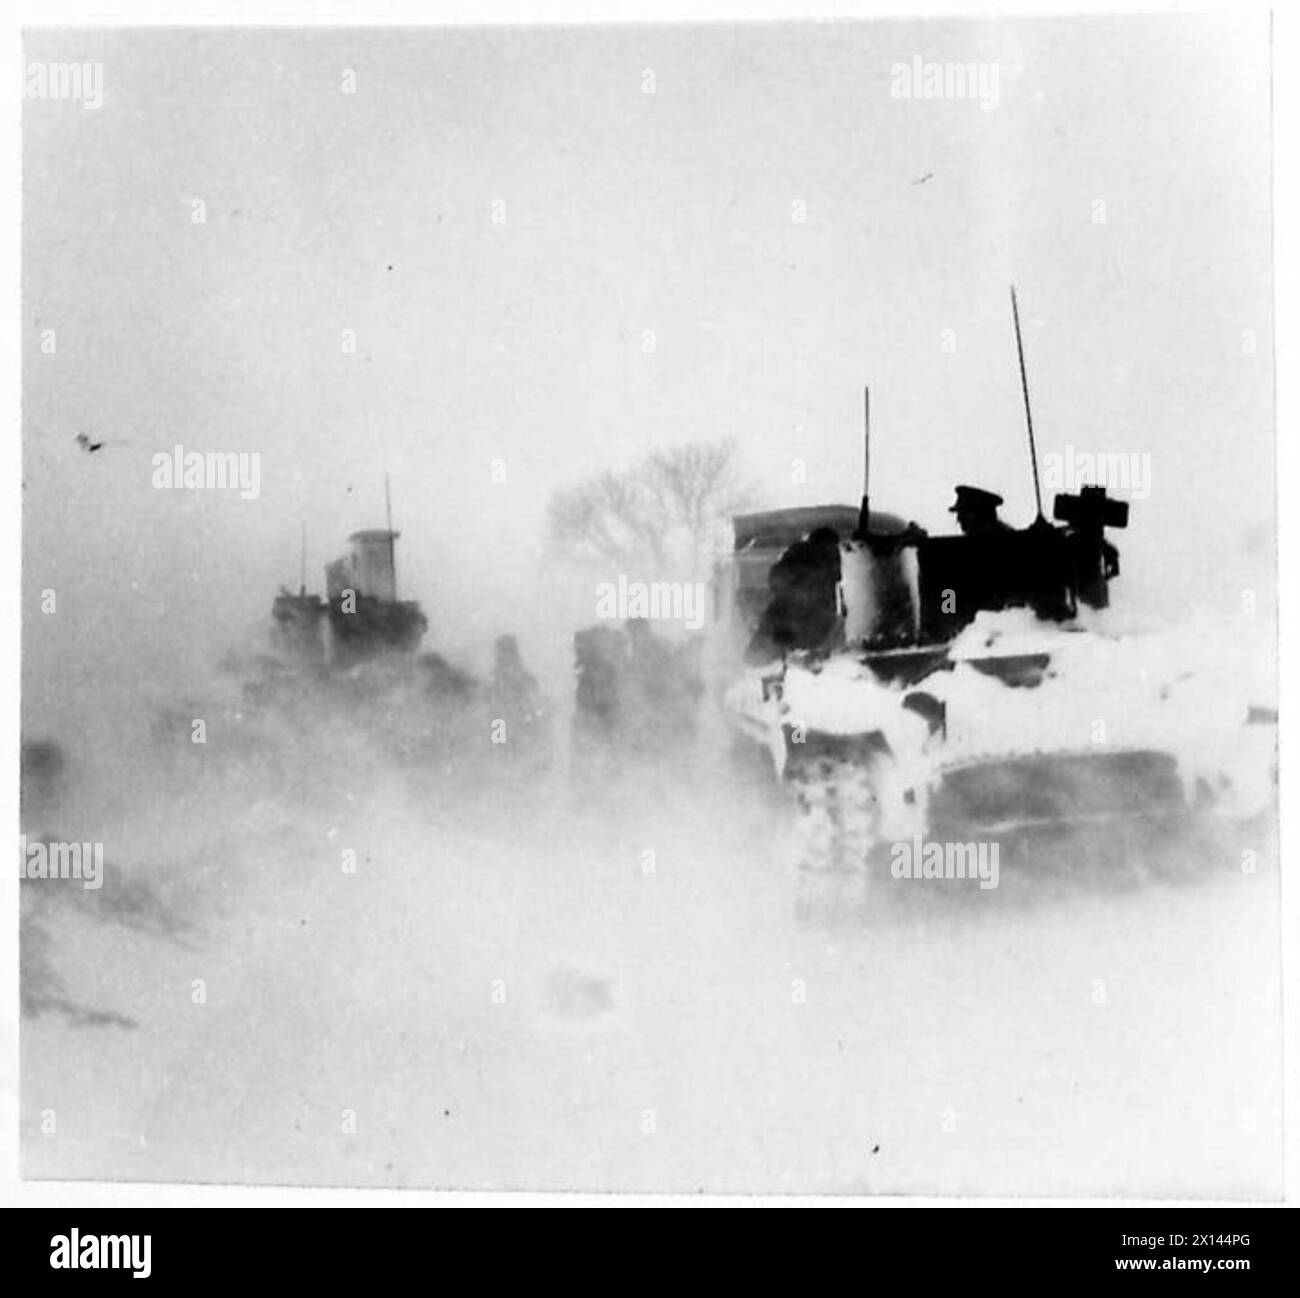 PANZER BEFREIEN den REISEBUS AUS DER SCHNEEWEHUNG - Tanka befreit den Reisebus während eines Schneesturms der British Army Stockfoto